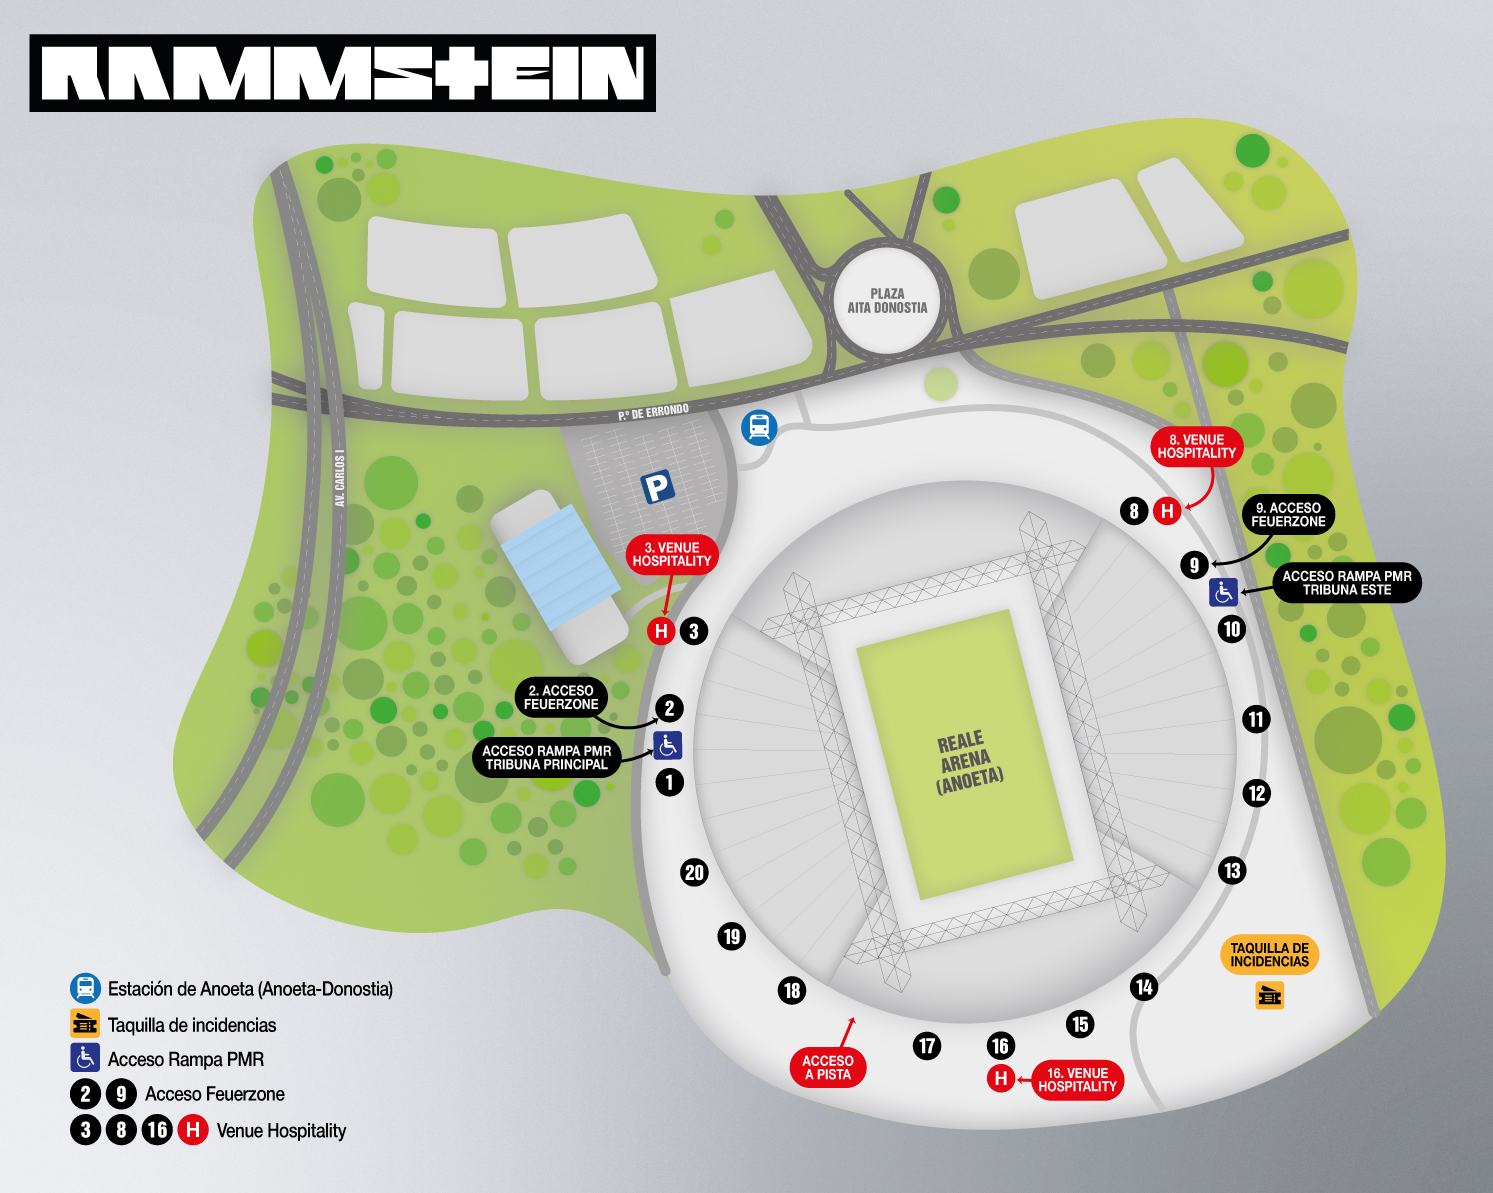 Información general, horarios y accesos para el concierto de Rammstein estes 5 de junio en Donosti